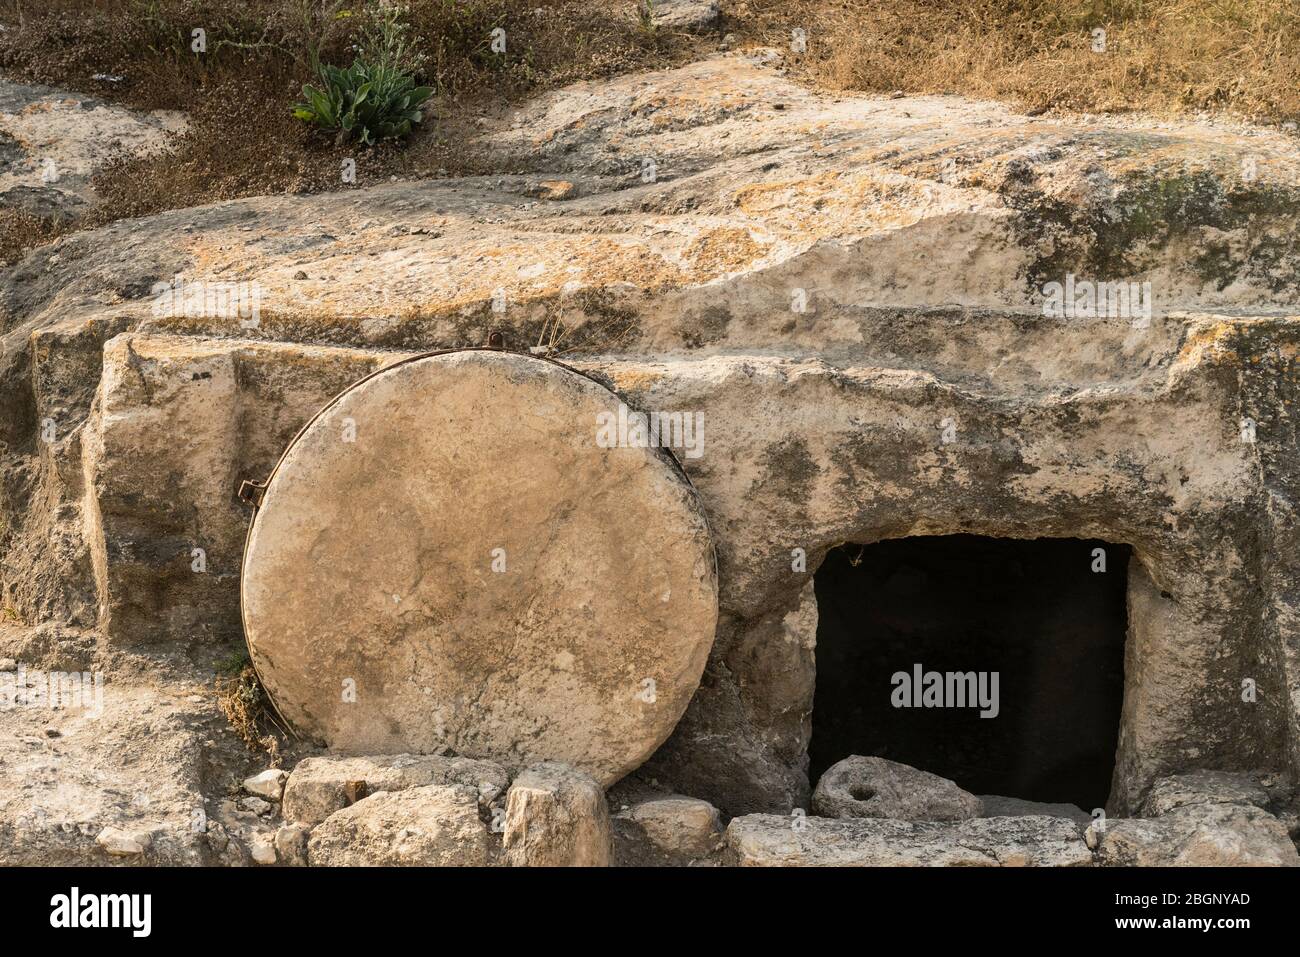 Israël, Galilée, un tombeau traditionnel du premier siècle avec une porte en pierre en roulement dans le nord d'Israël. Selon la description biblique, Jésus de Nazareth a été enterré dans un tombeau comme celui-ci. Banque D'Images